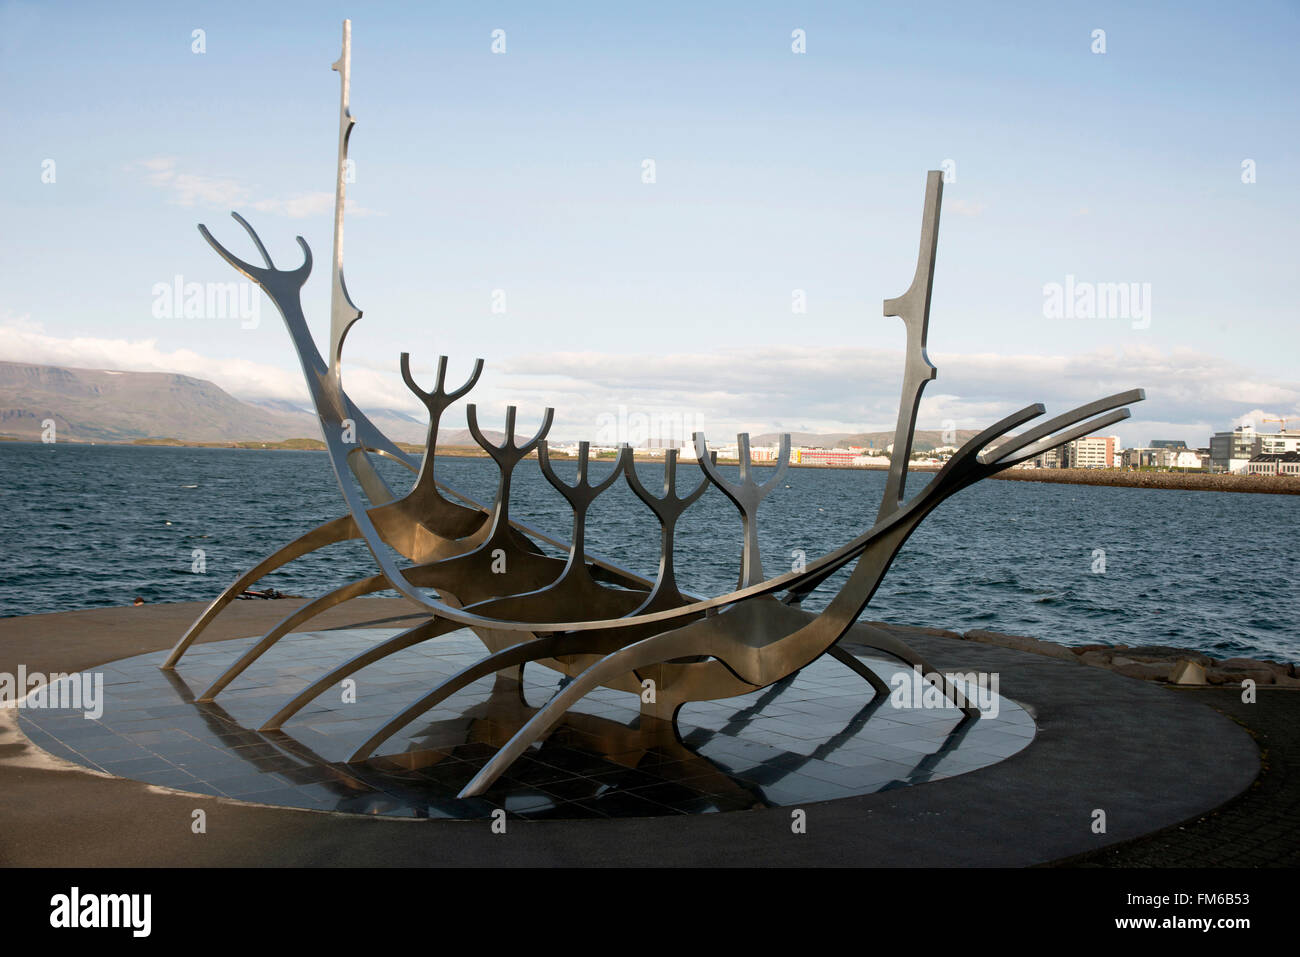 Un des artistes modernes impression d'un bateau viking, sur un littoral en Islande, avec les montagnes et la mer en arrière-plan. Banque D'Images